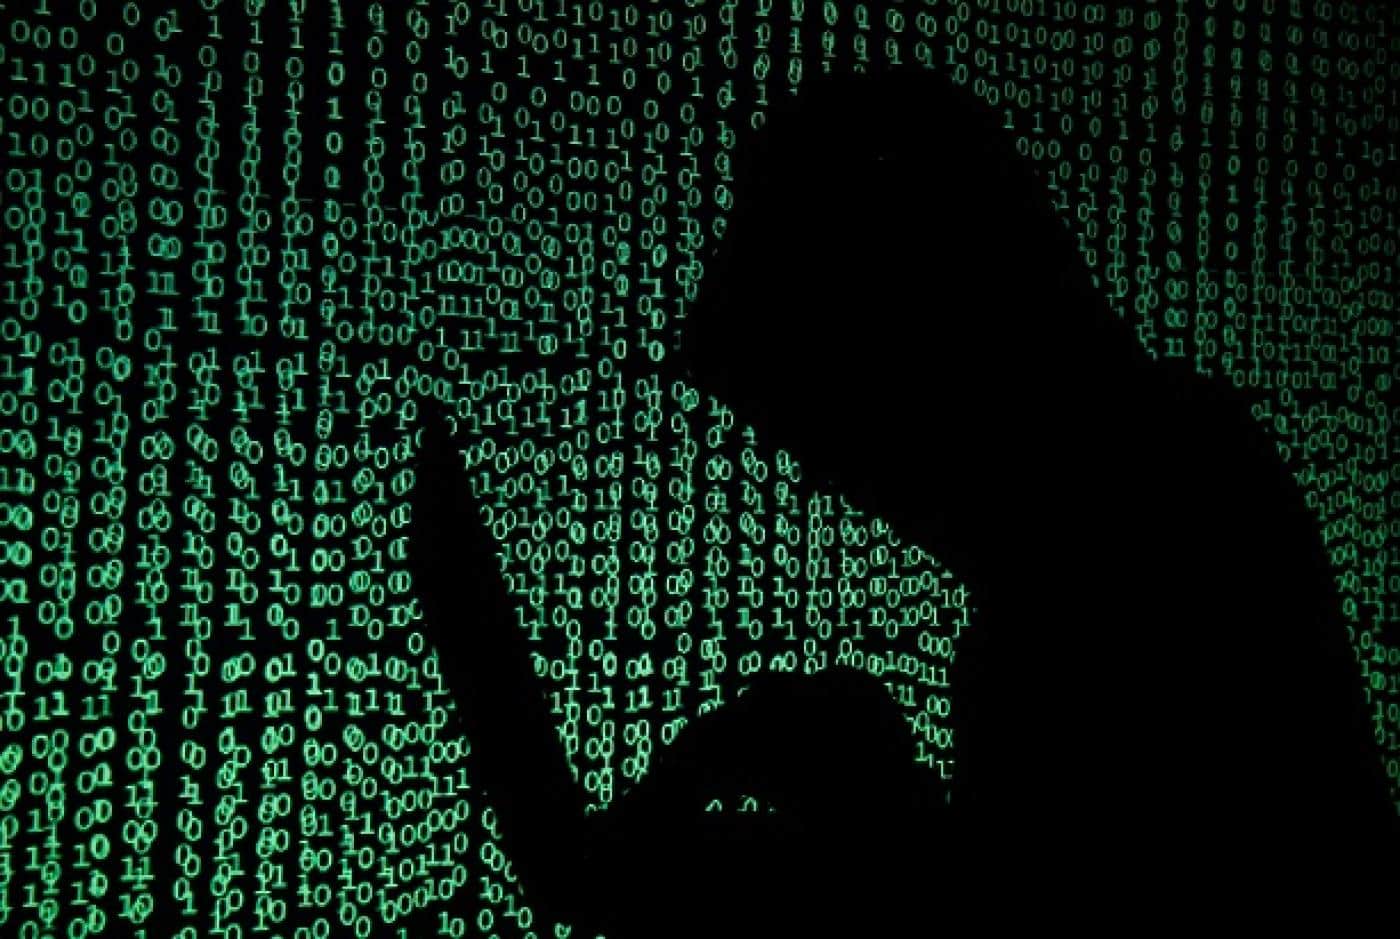 جهات تخريبية تعكر أجواء الشرق الأوسط عبر عمليات اختطاف إلكترونية